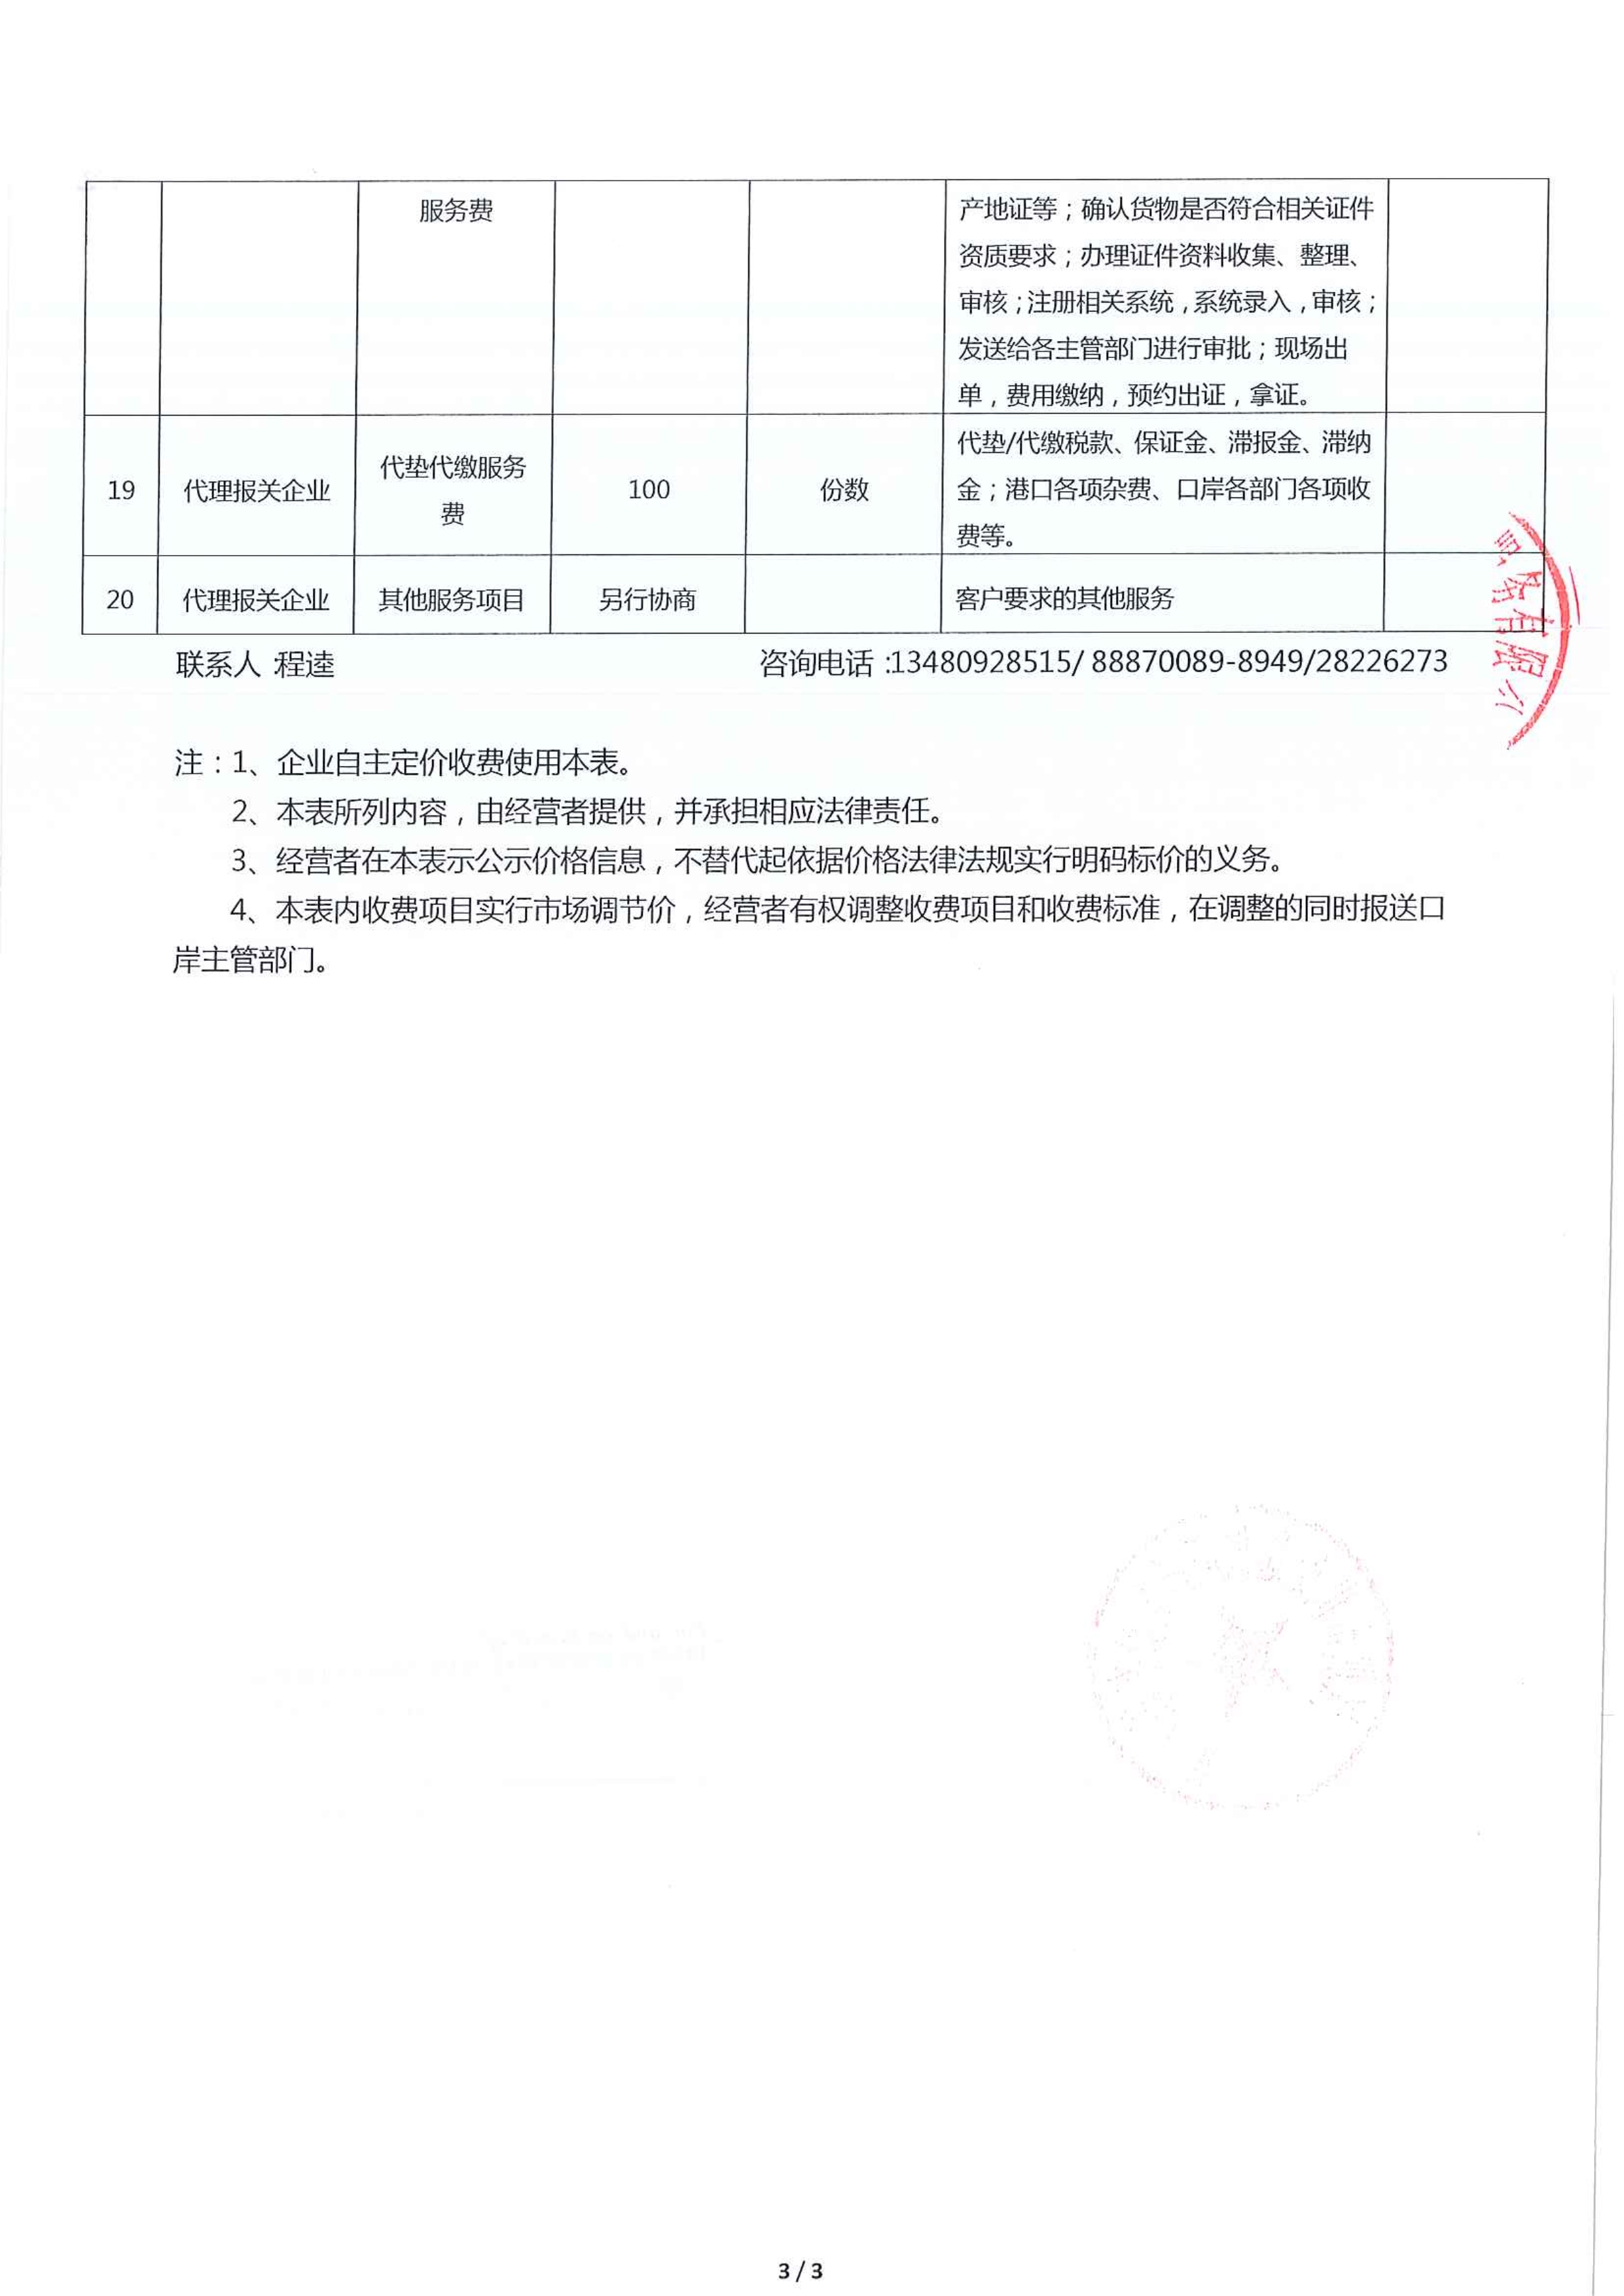 收费清单－深圳巨航关务综合服务有限公司.pdf_3_1.jpg